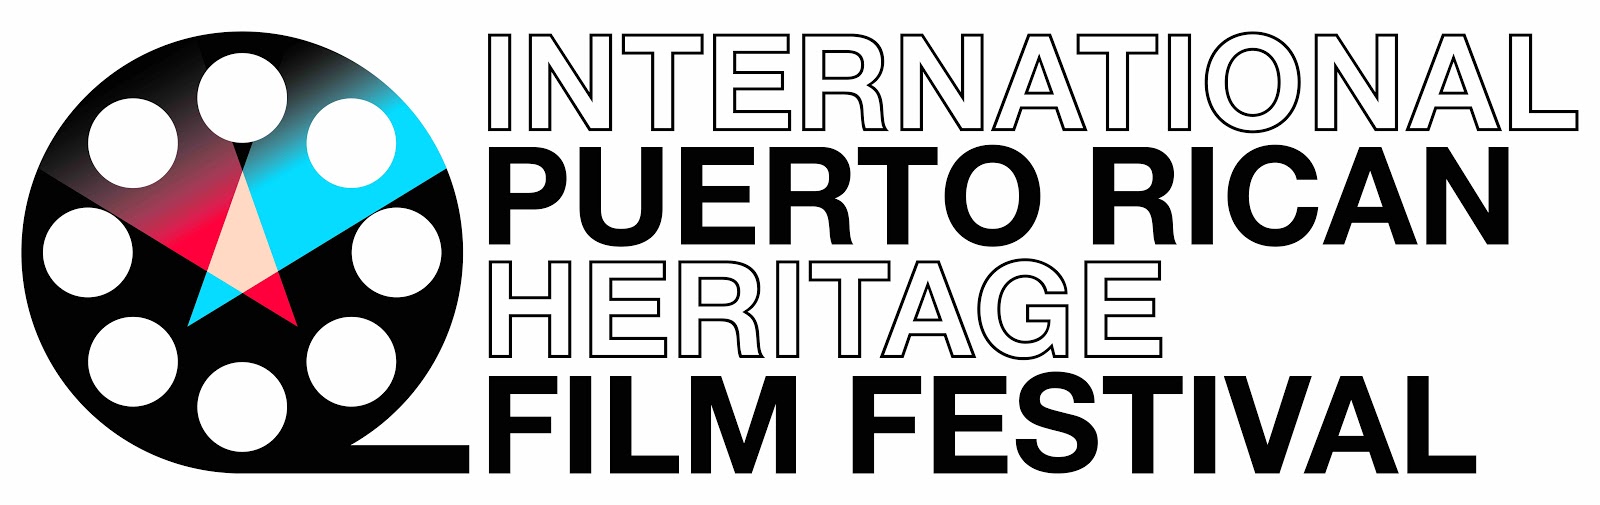 フィルム リールのグラフィックの横に黒の太字で書かれた国際プエルトリコ ヘリテージ フィルム フェスティバル。